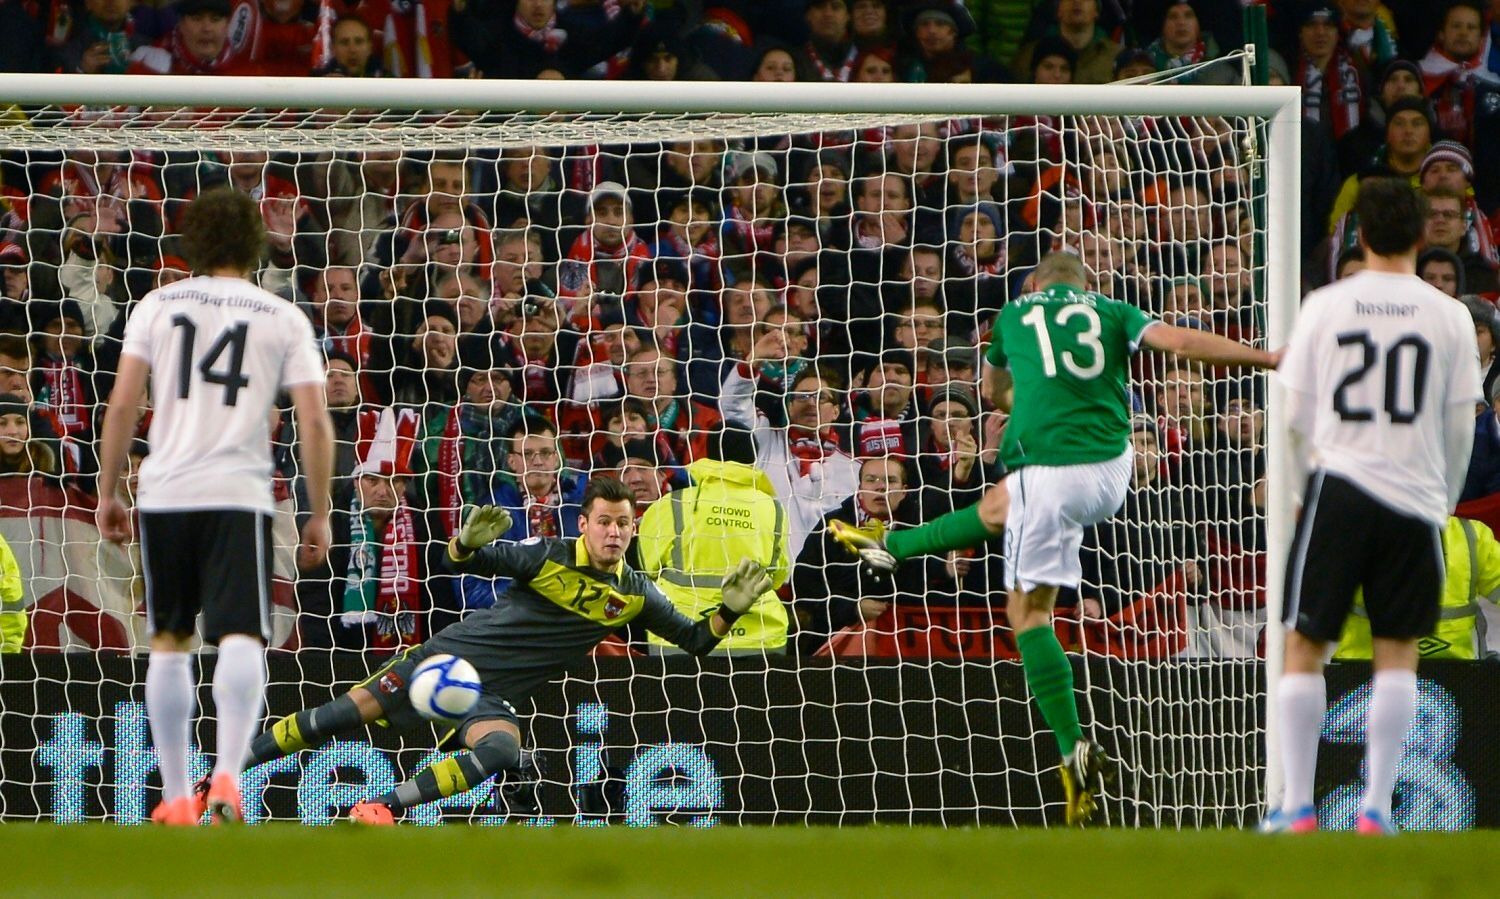 Fotbal, Irsko - Rakousko: Jonathan Walters (13) proměňuje penaltu